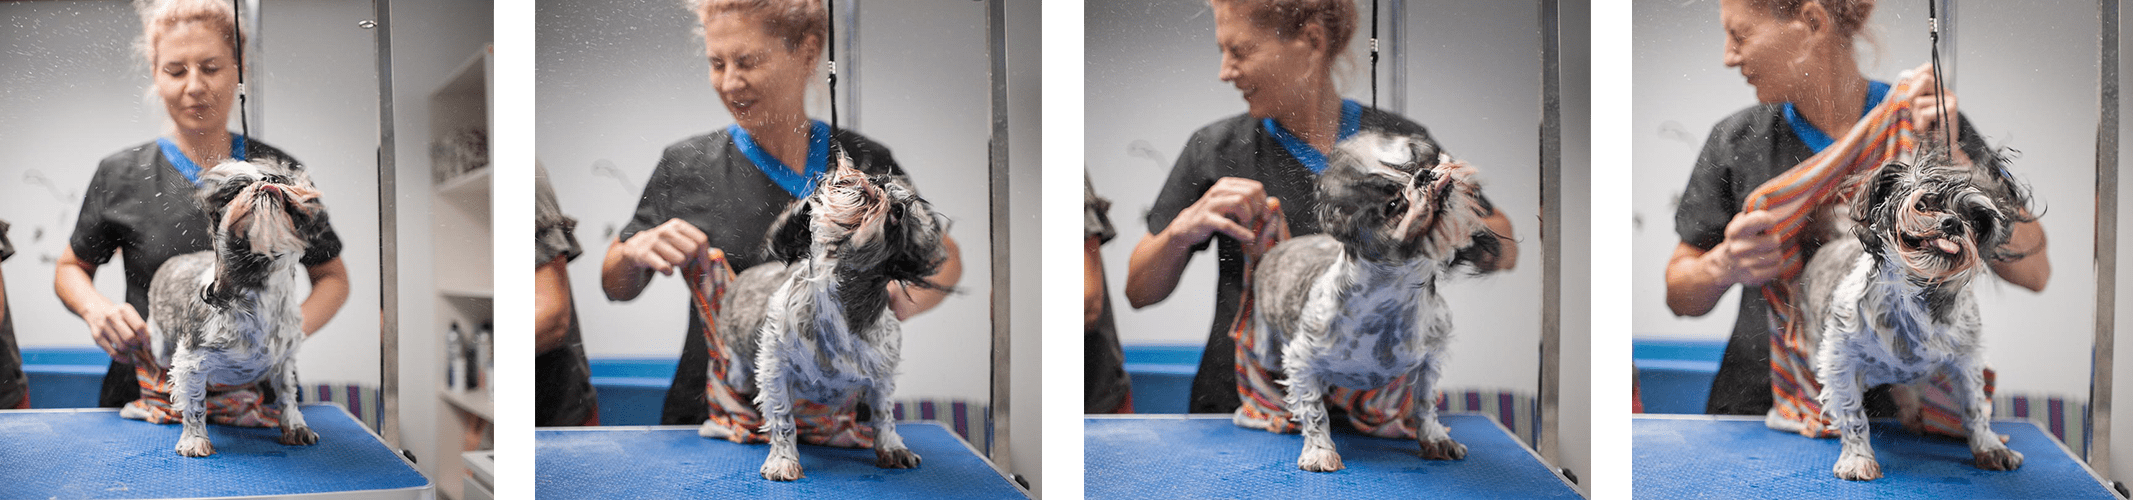 Salon strzyżenia i pielęgnacji psów